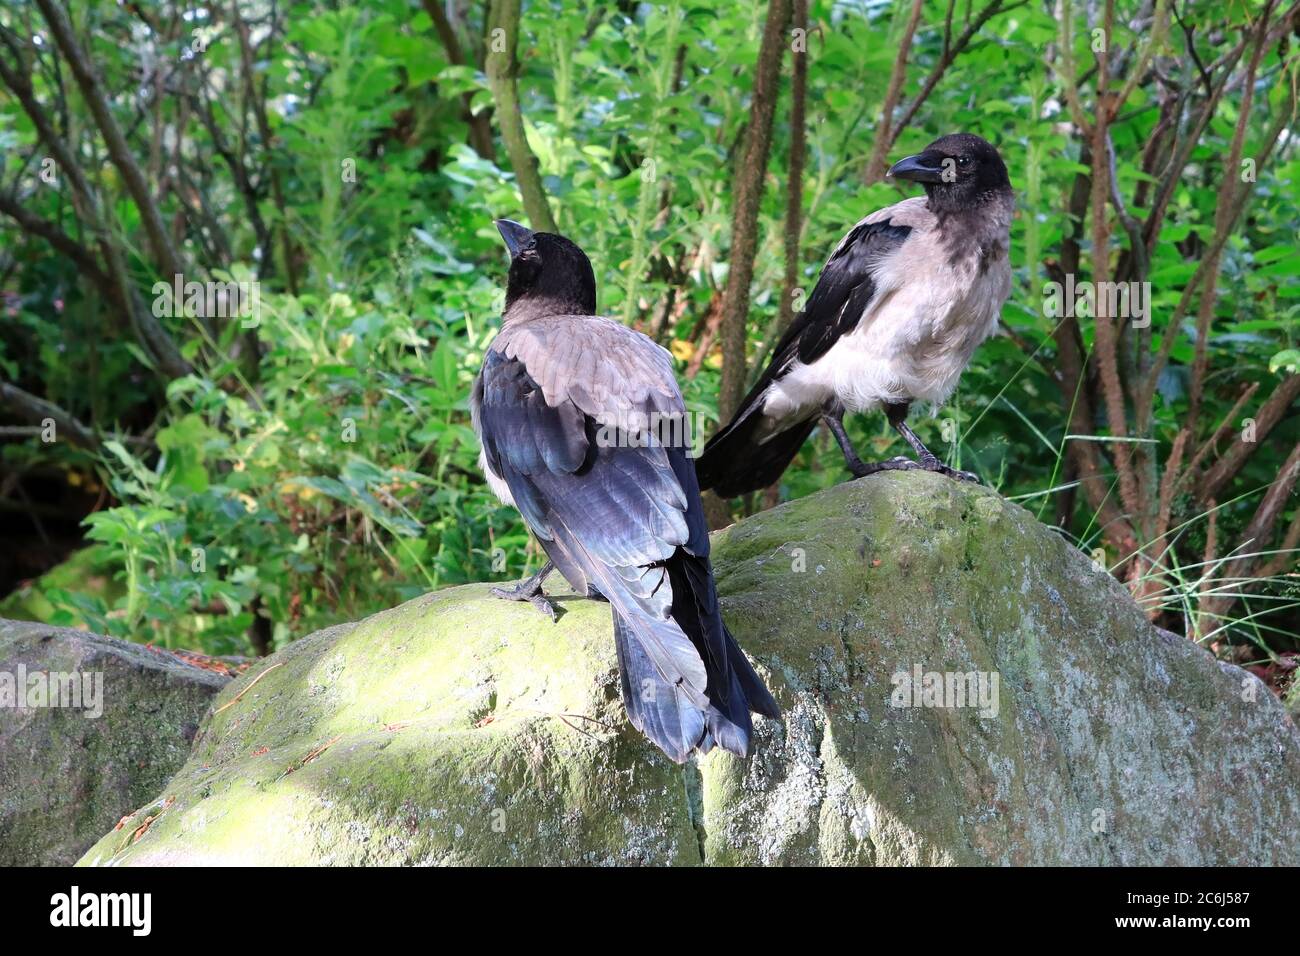 Deux jeunes Crows à capuchon, Corvus cornix, debout sur une roche, explorant leur environnement. Les jeunes corneilles examinent leur environnement avec beaucoup de curiosité. Banque D'Images